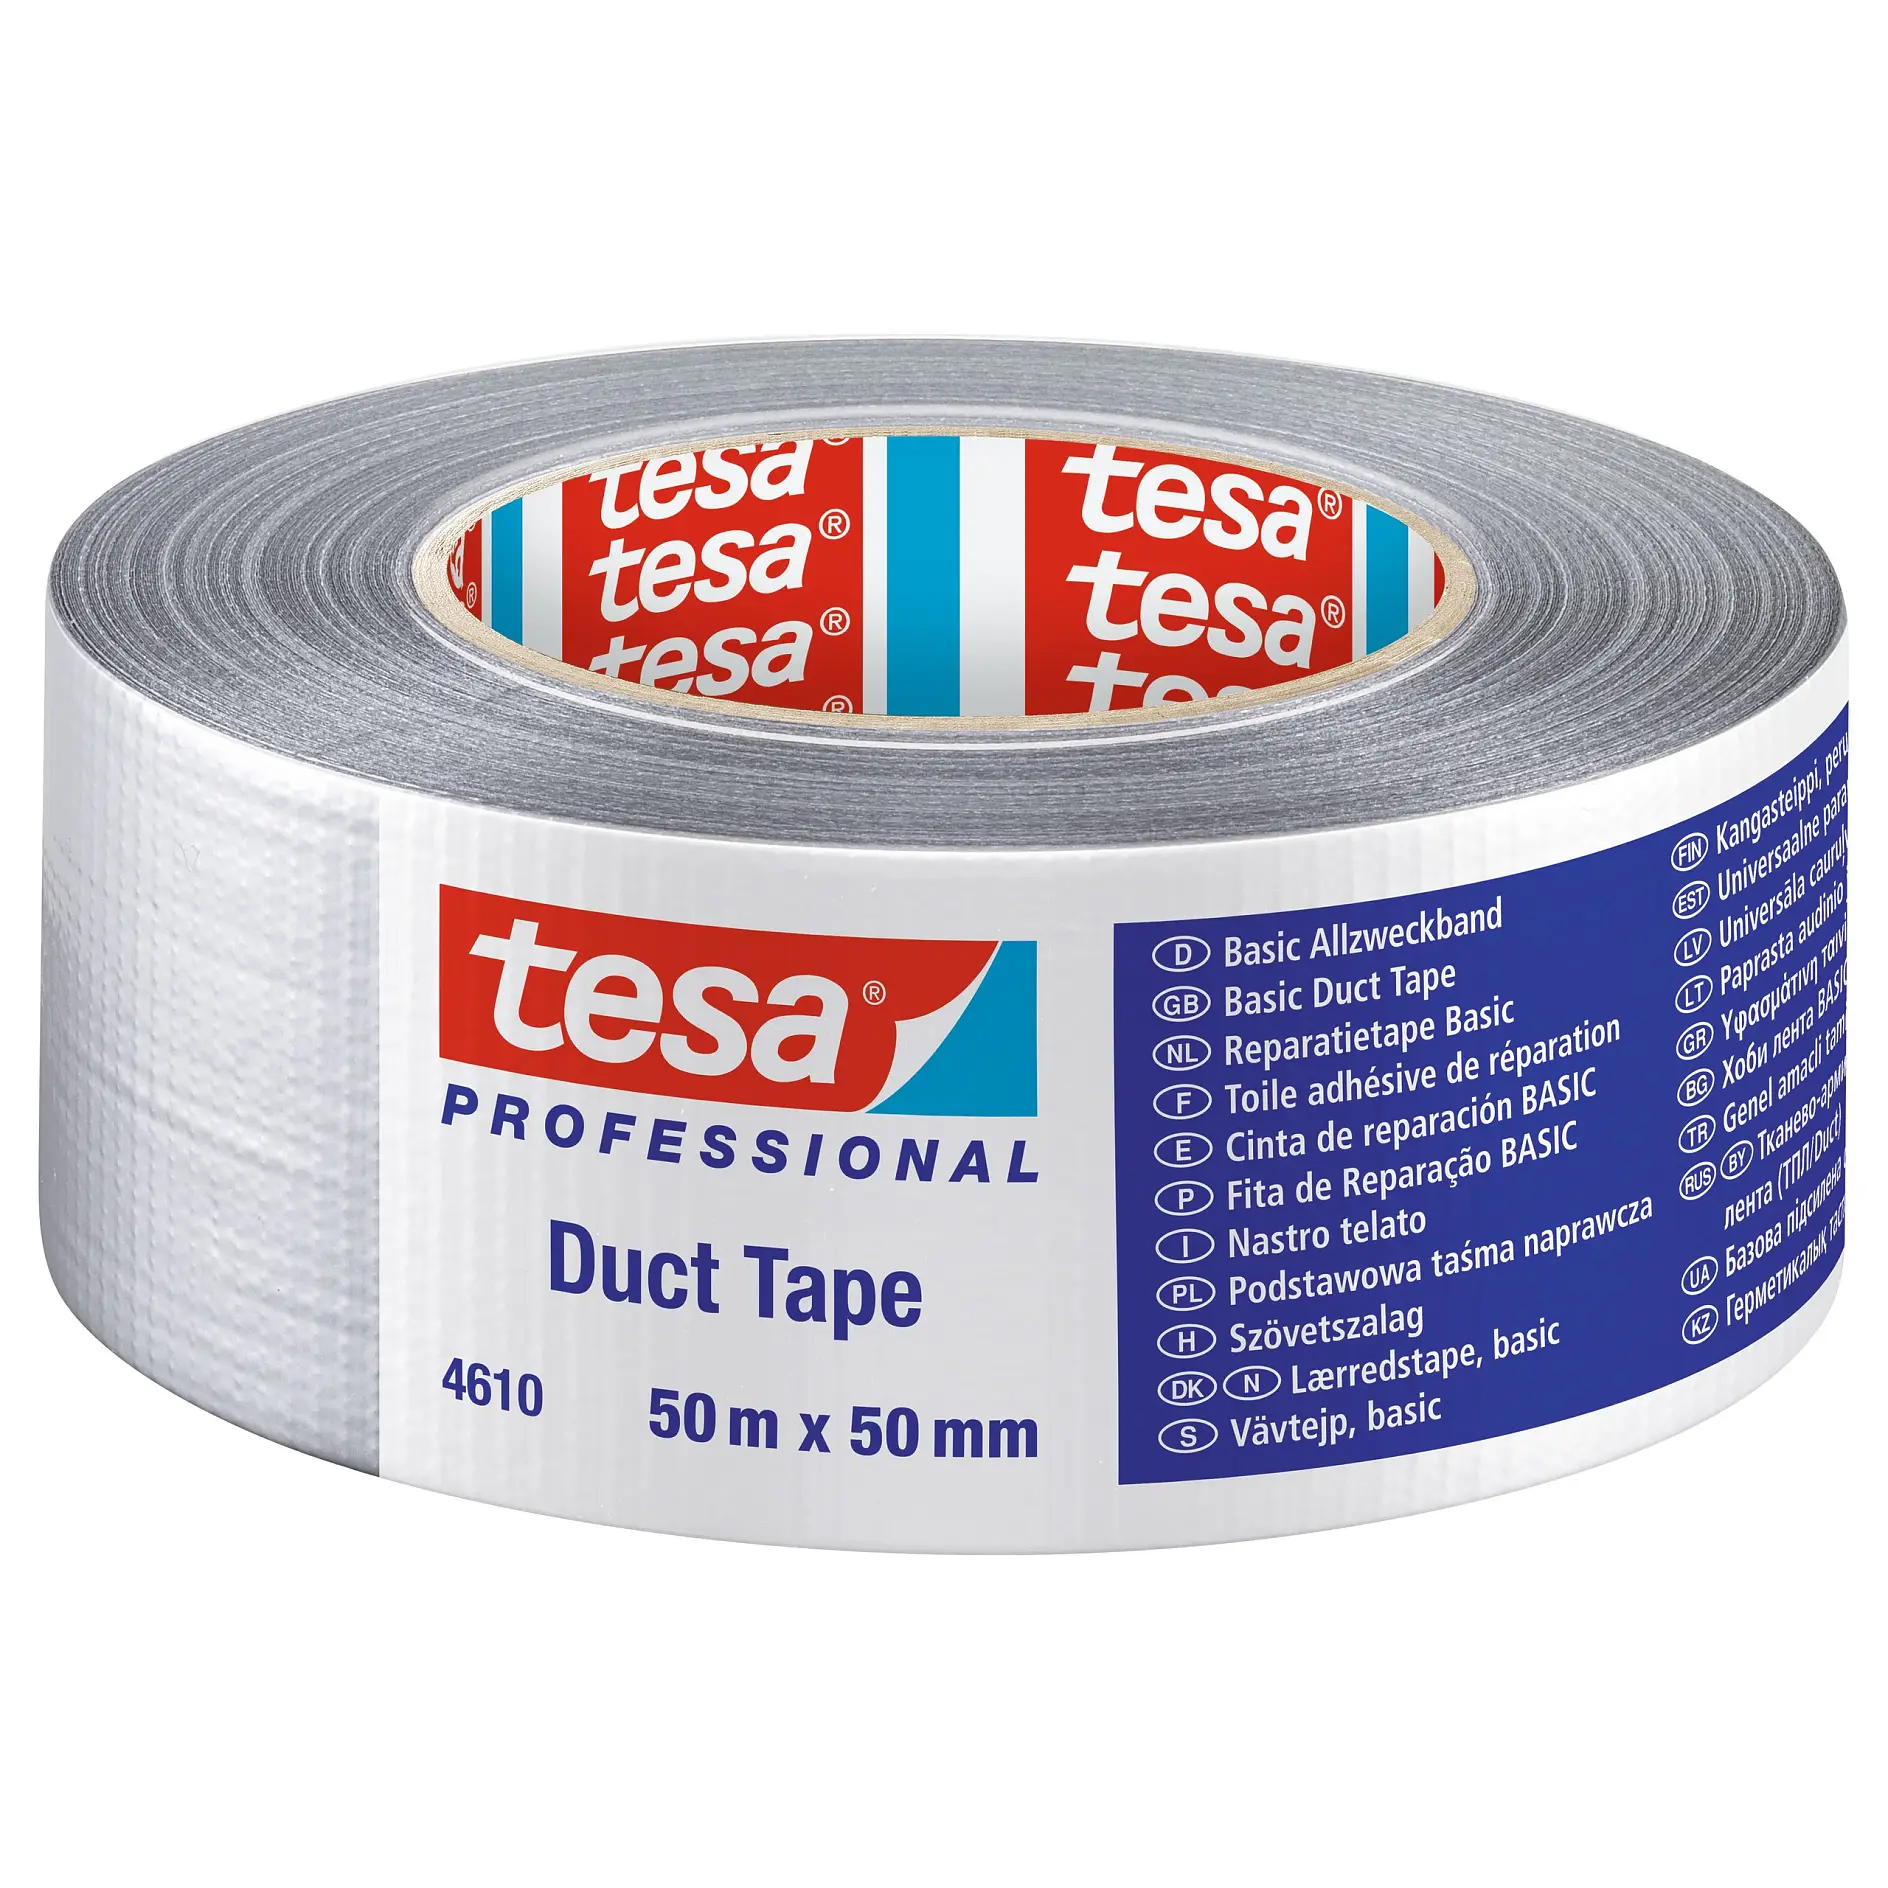 [en-en] tesa professional duct tape 50m x 50mm, silver, LI419